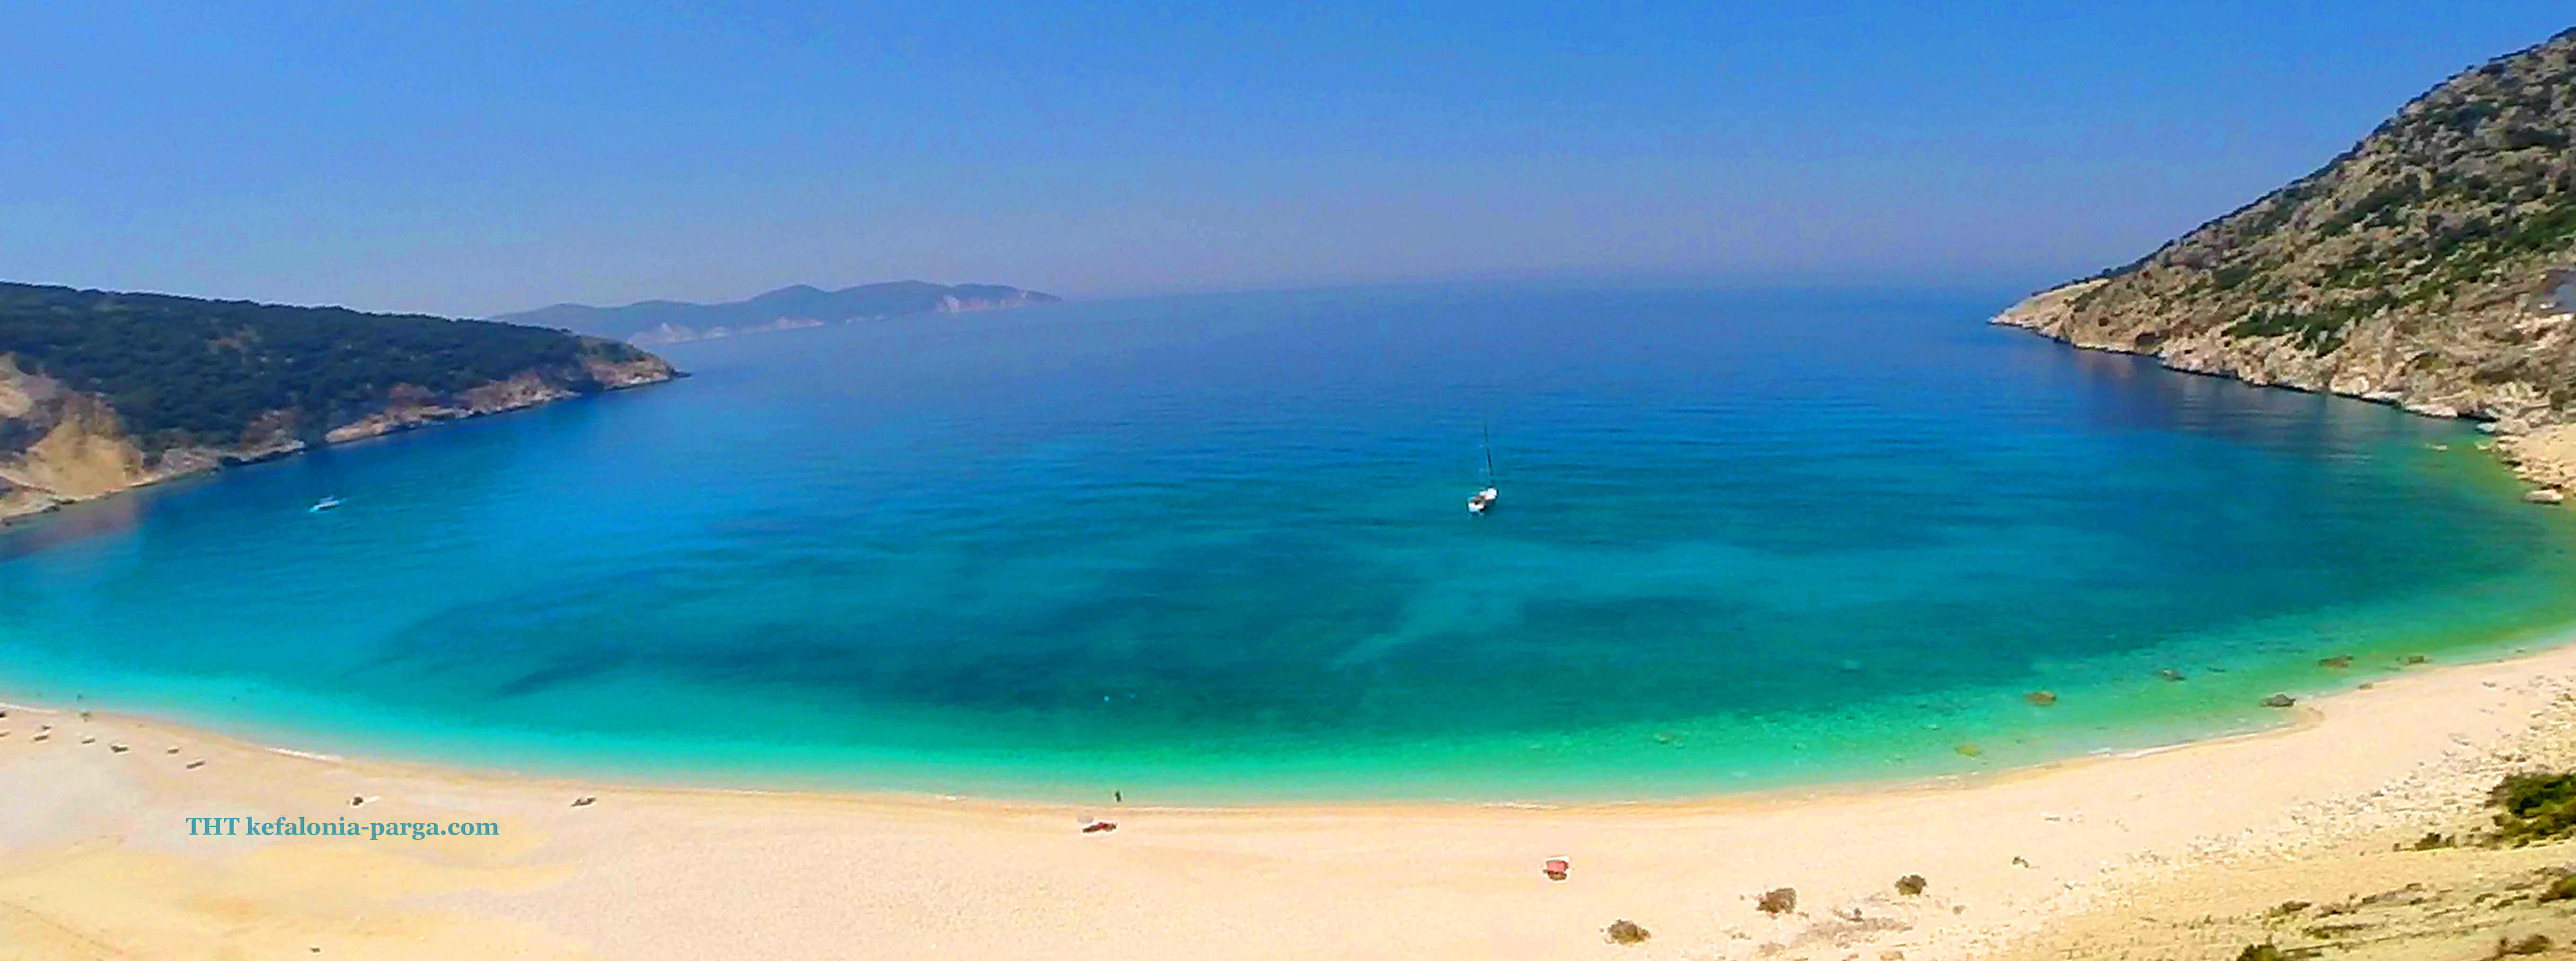 Пляжи Кефалонии: пляж Миртос. Греция отдых.